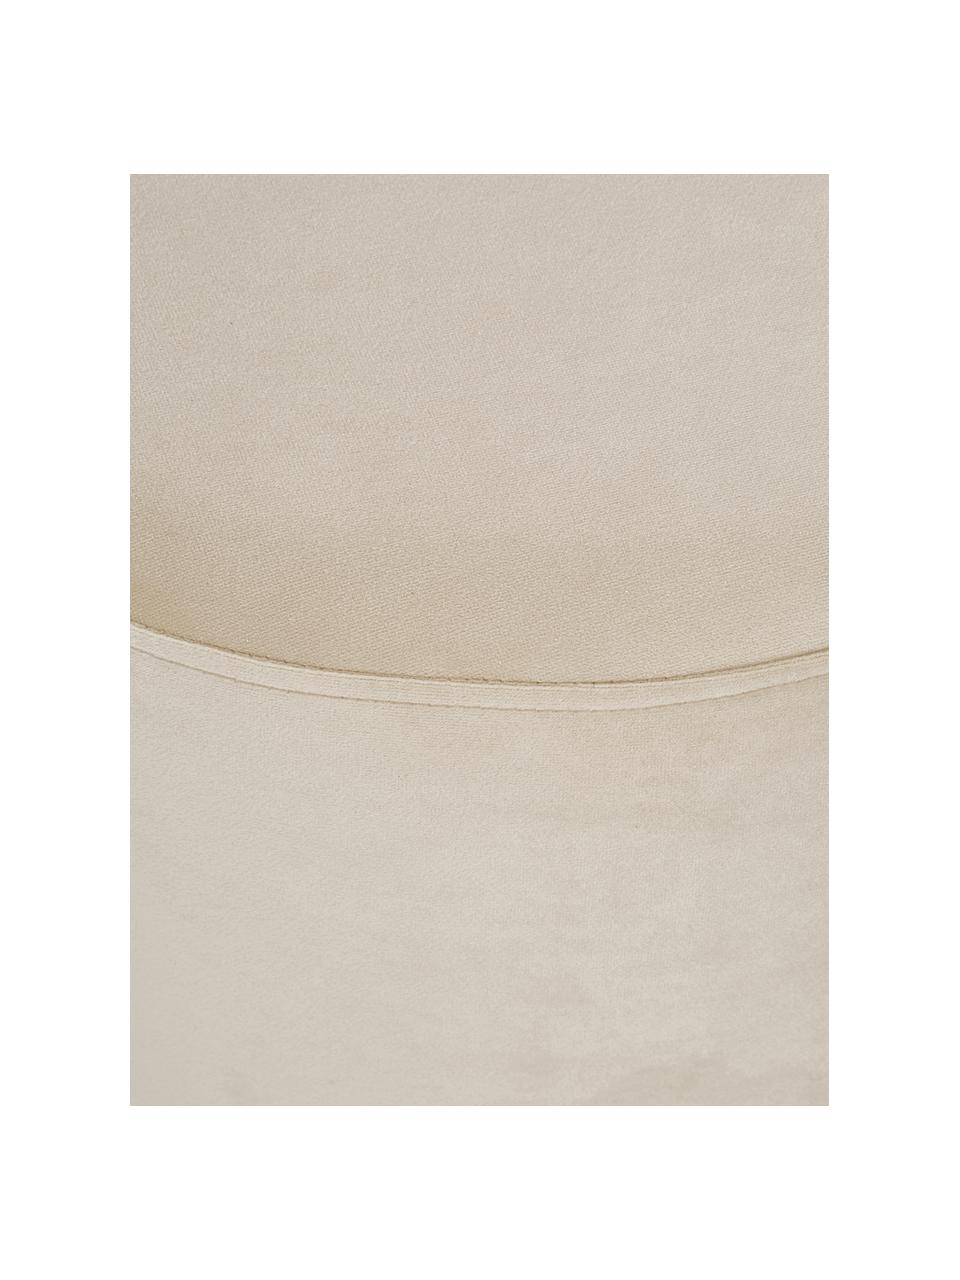 Fluwelen poef Daisy in beige, Bekleding: fluweel (polyester), Frame: multiplex, Fluweel beige, Ø 38 x H 45 cm